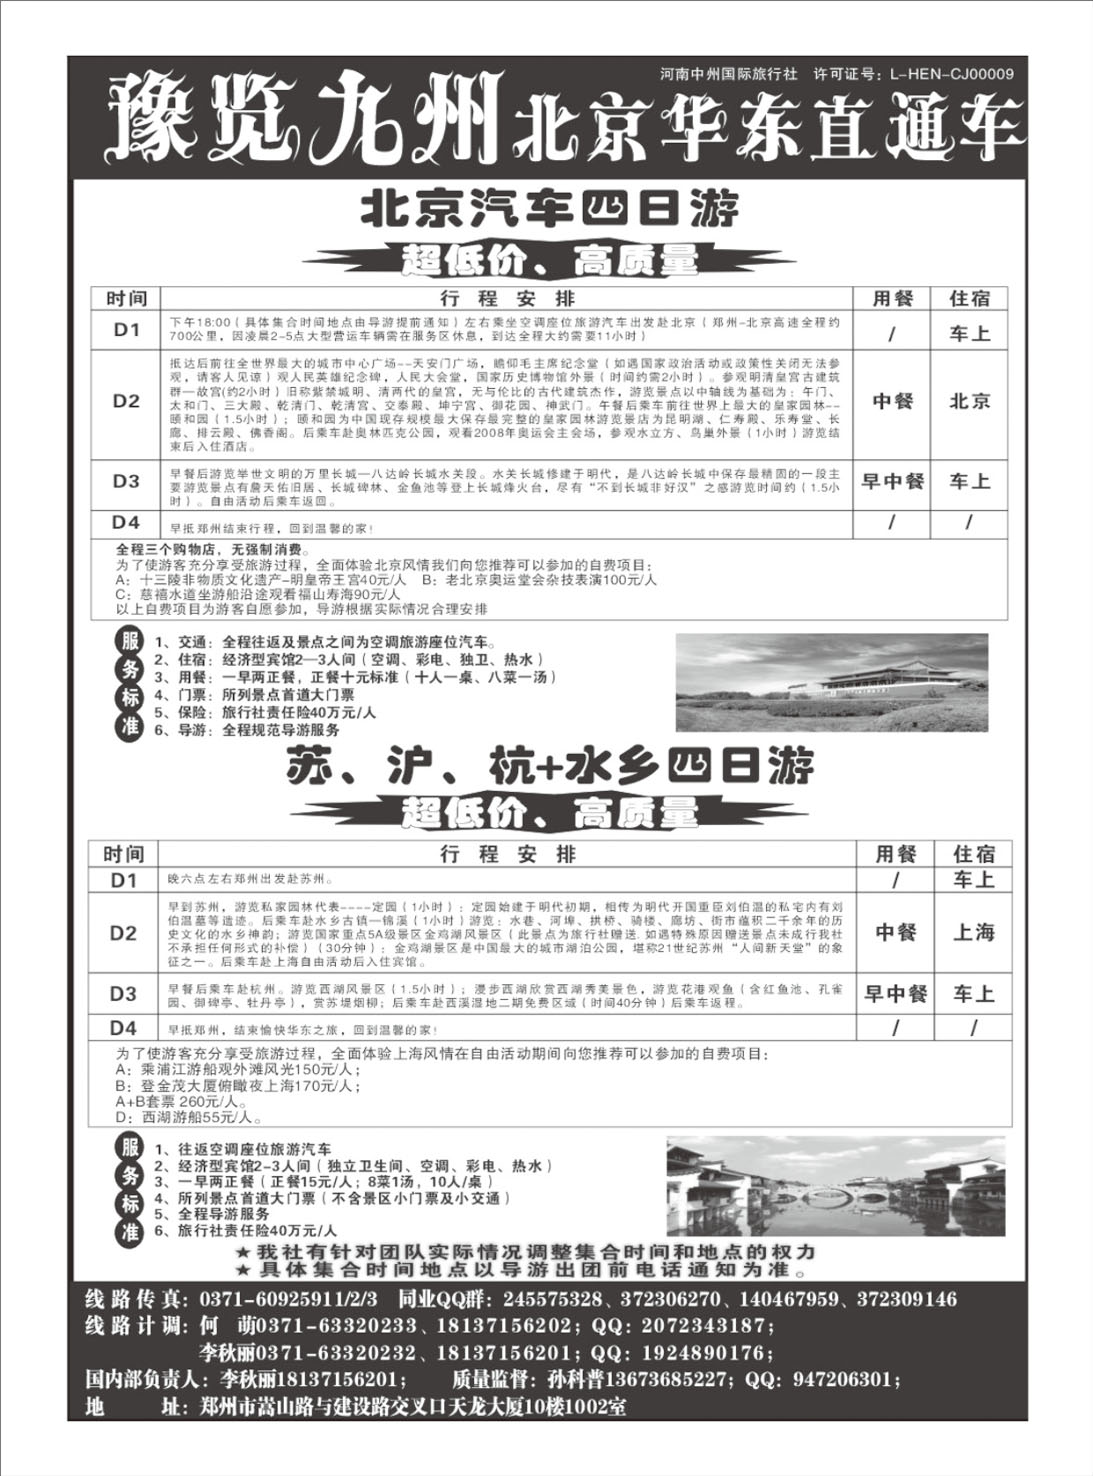 北京华东线 -预览九州